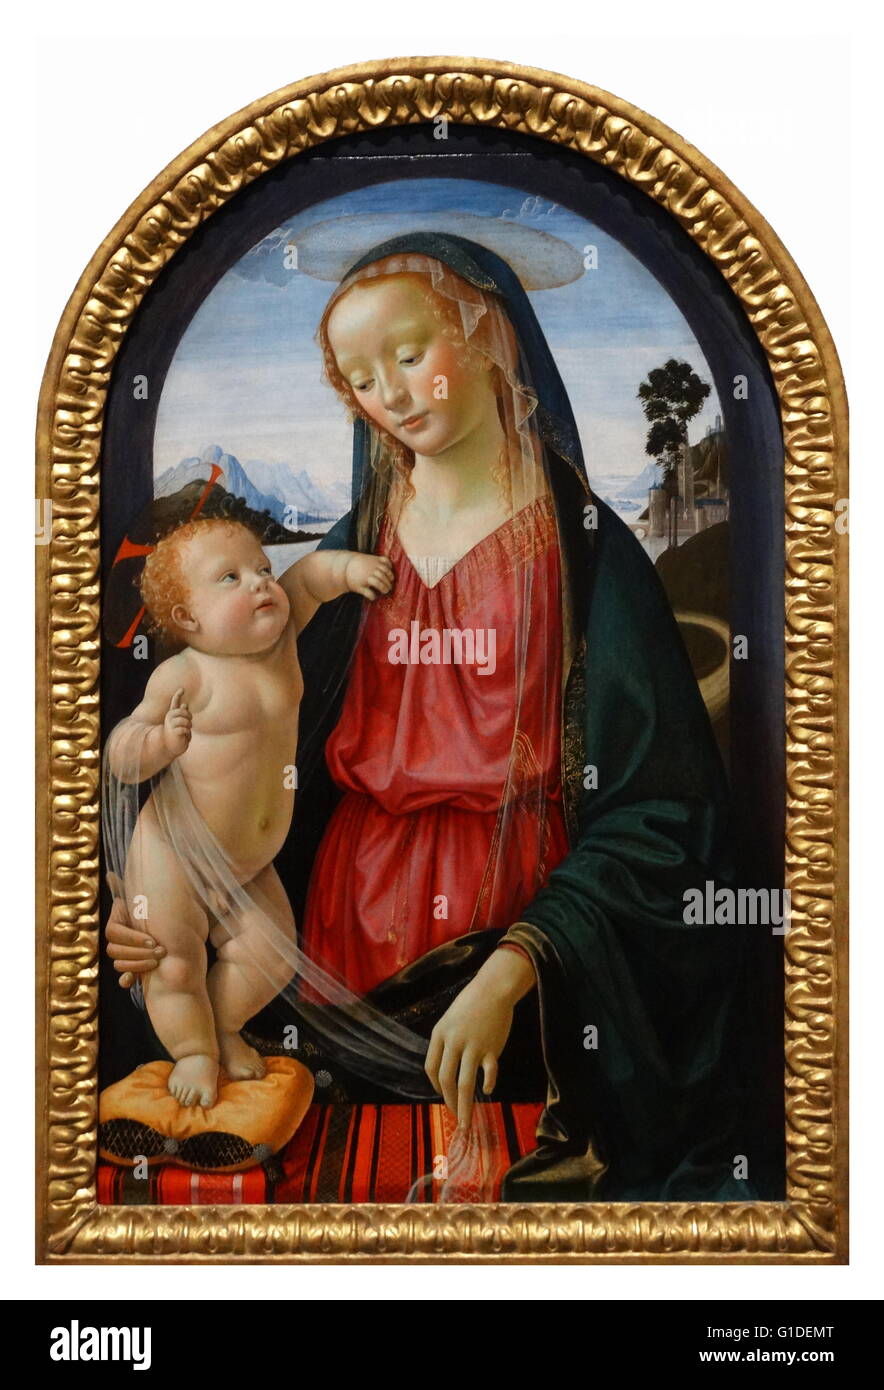 Gemälde mit dem Titel "Die Jungfrau und Kind" von Domenico Ghirlandaio (1449-1494) einer italienischen Renaissance-Malers. Vom 15. Jahrhundert Stockfoto